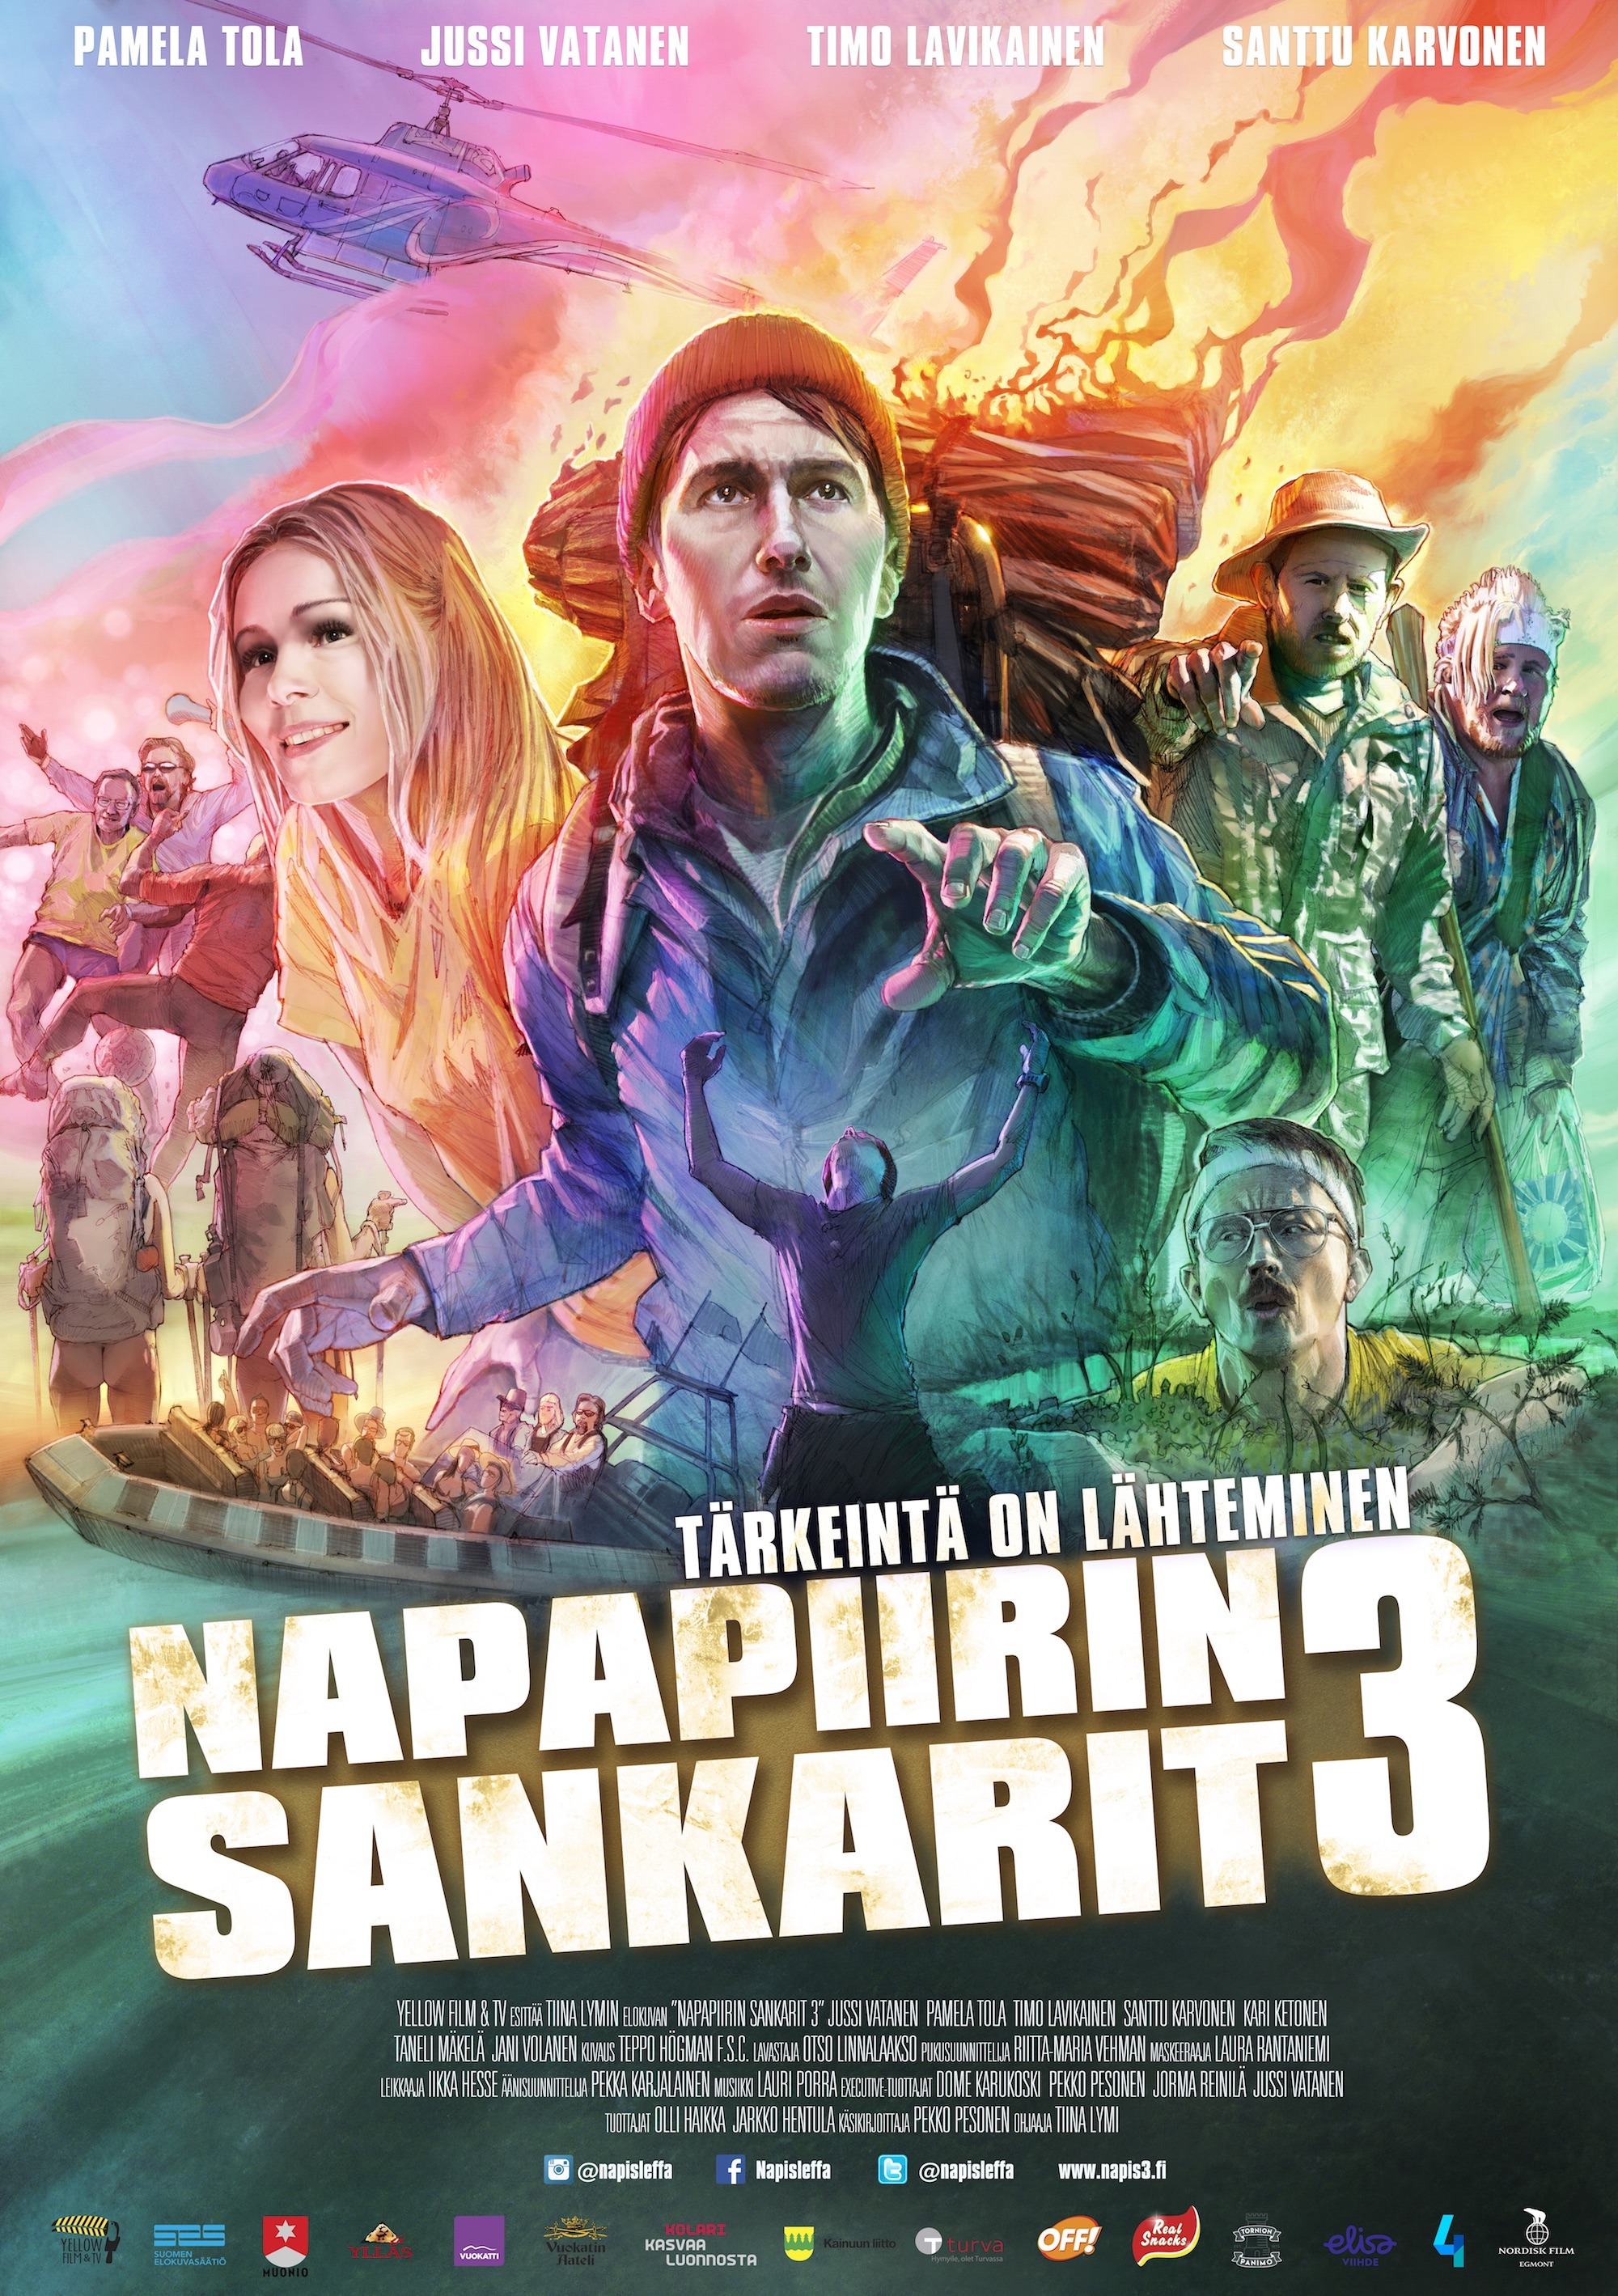 Mega Sized Movie Poster Image for Napapiirin sankarit 3 (#2 of 2)